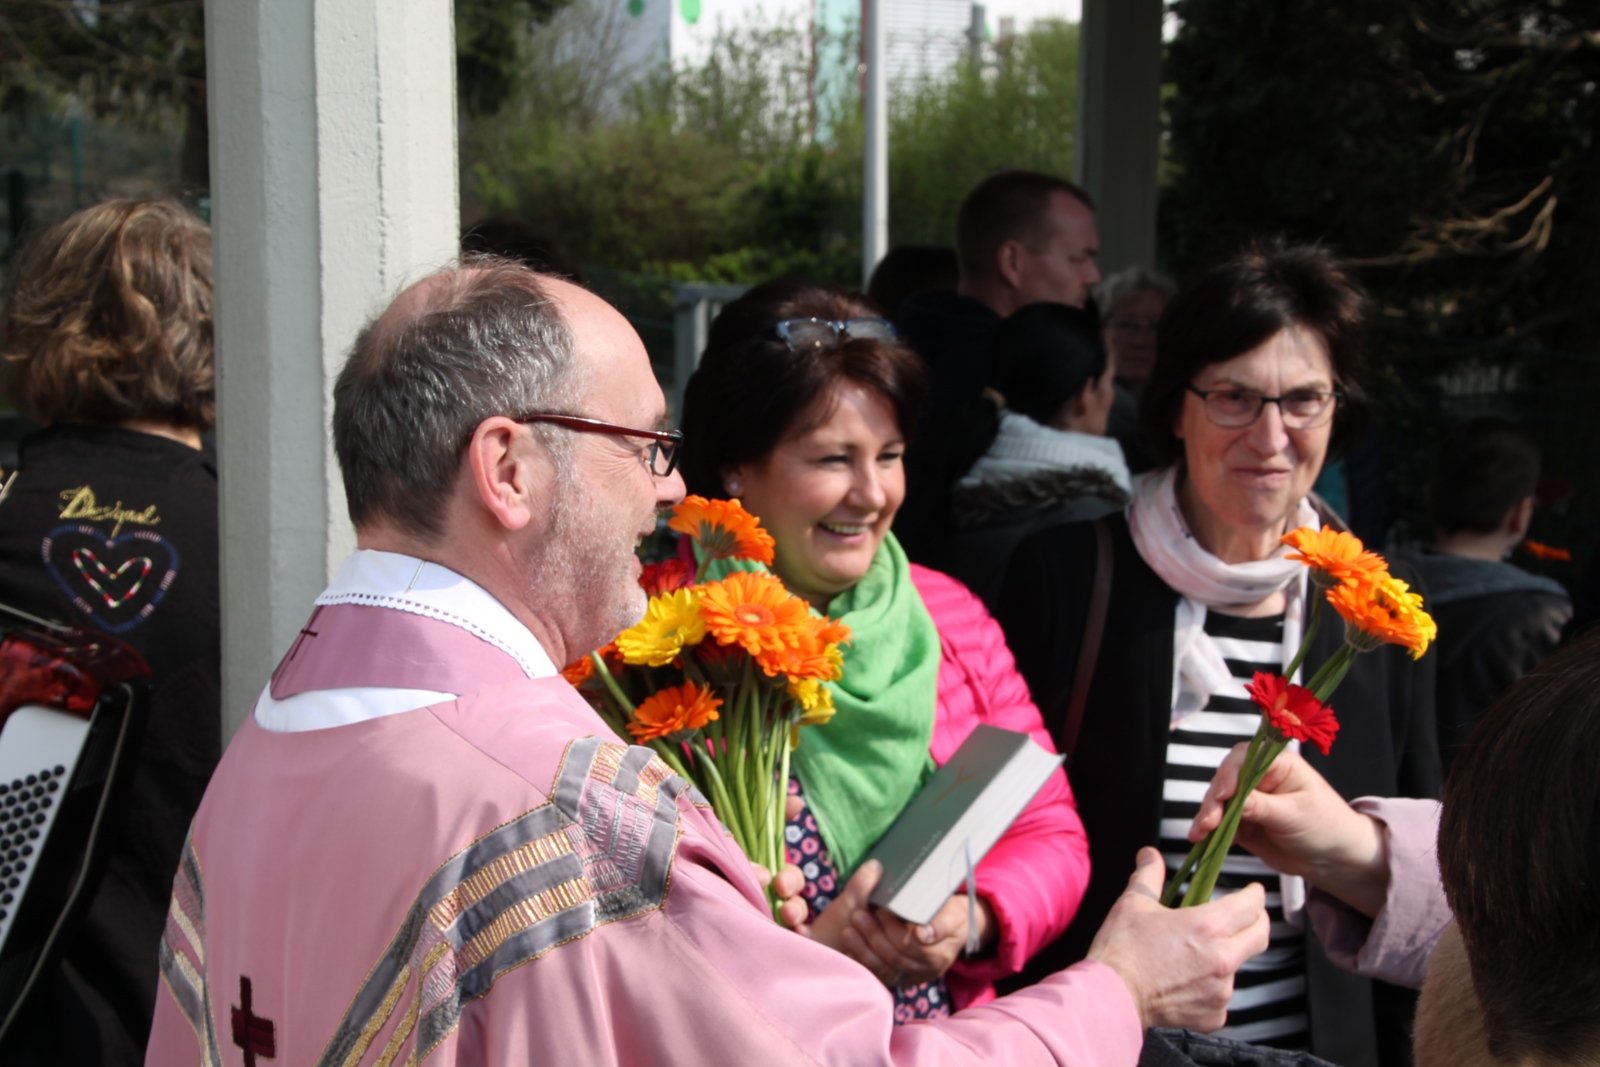 Wahlen in Liebfrauen: Blumen werden überreicht (c) Susanne Coenen